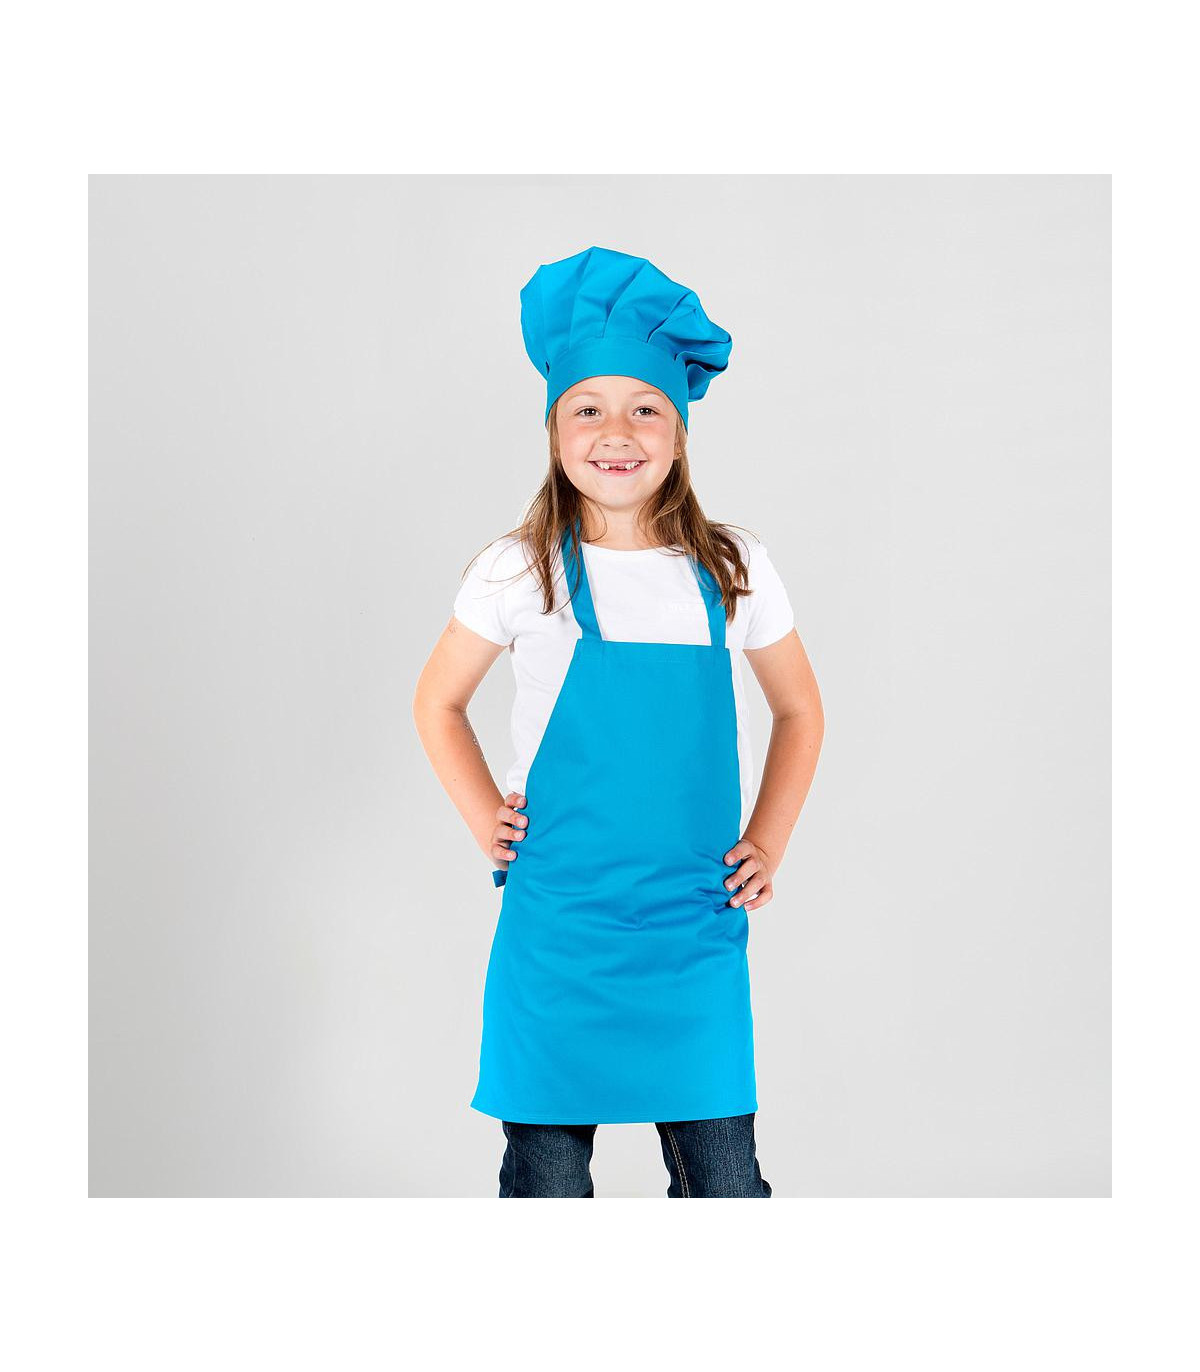 Chaqueta infantil cocinero en color frambuesa